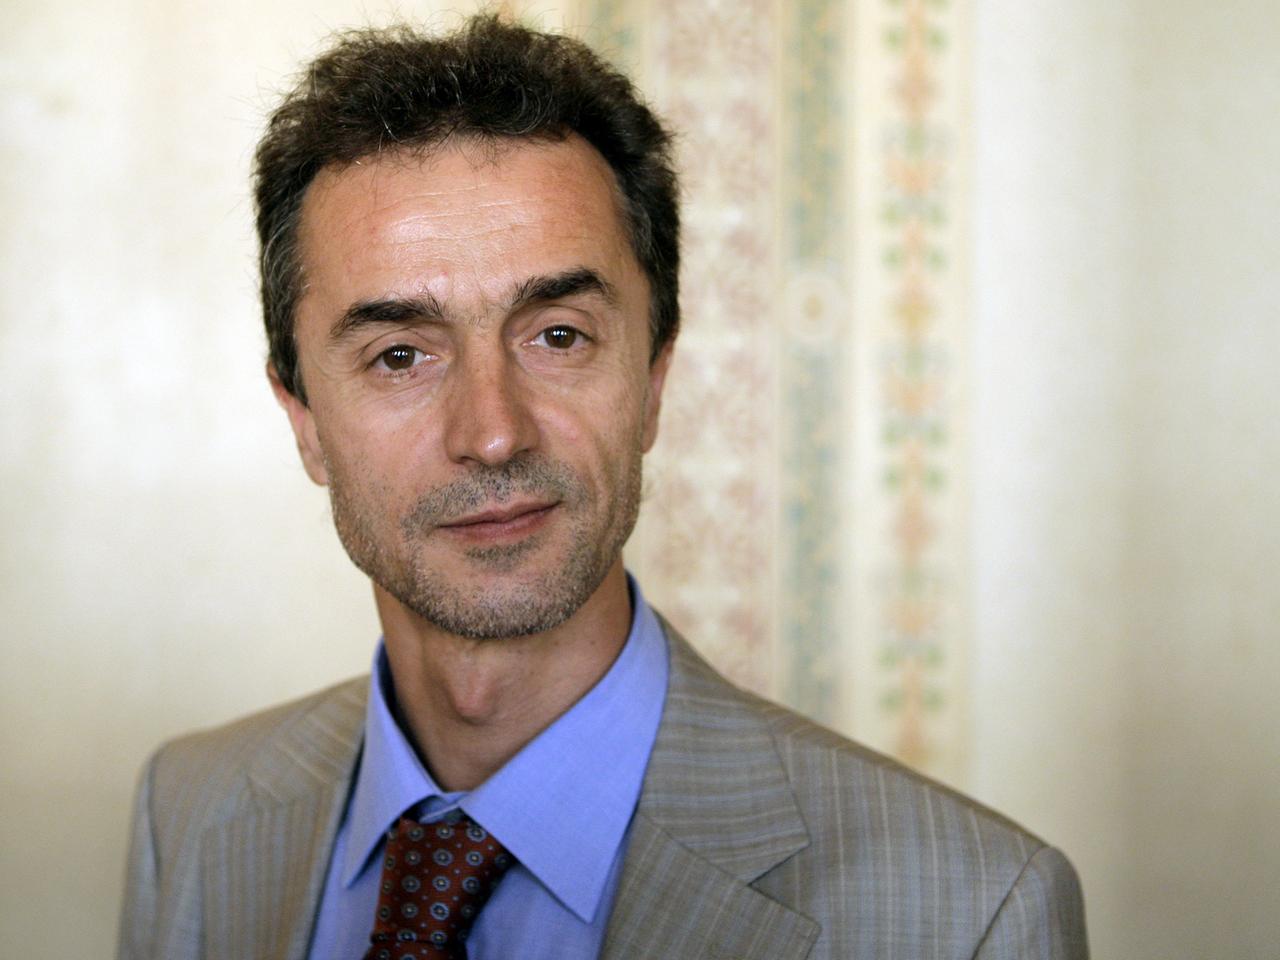 Prof. Dr. Ömer Özsoy vom Institut für Islamwissenschaft der Goethe-Universität Frankfurt am Main